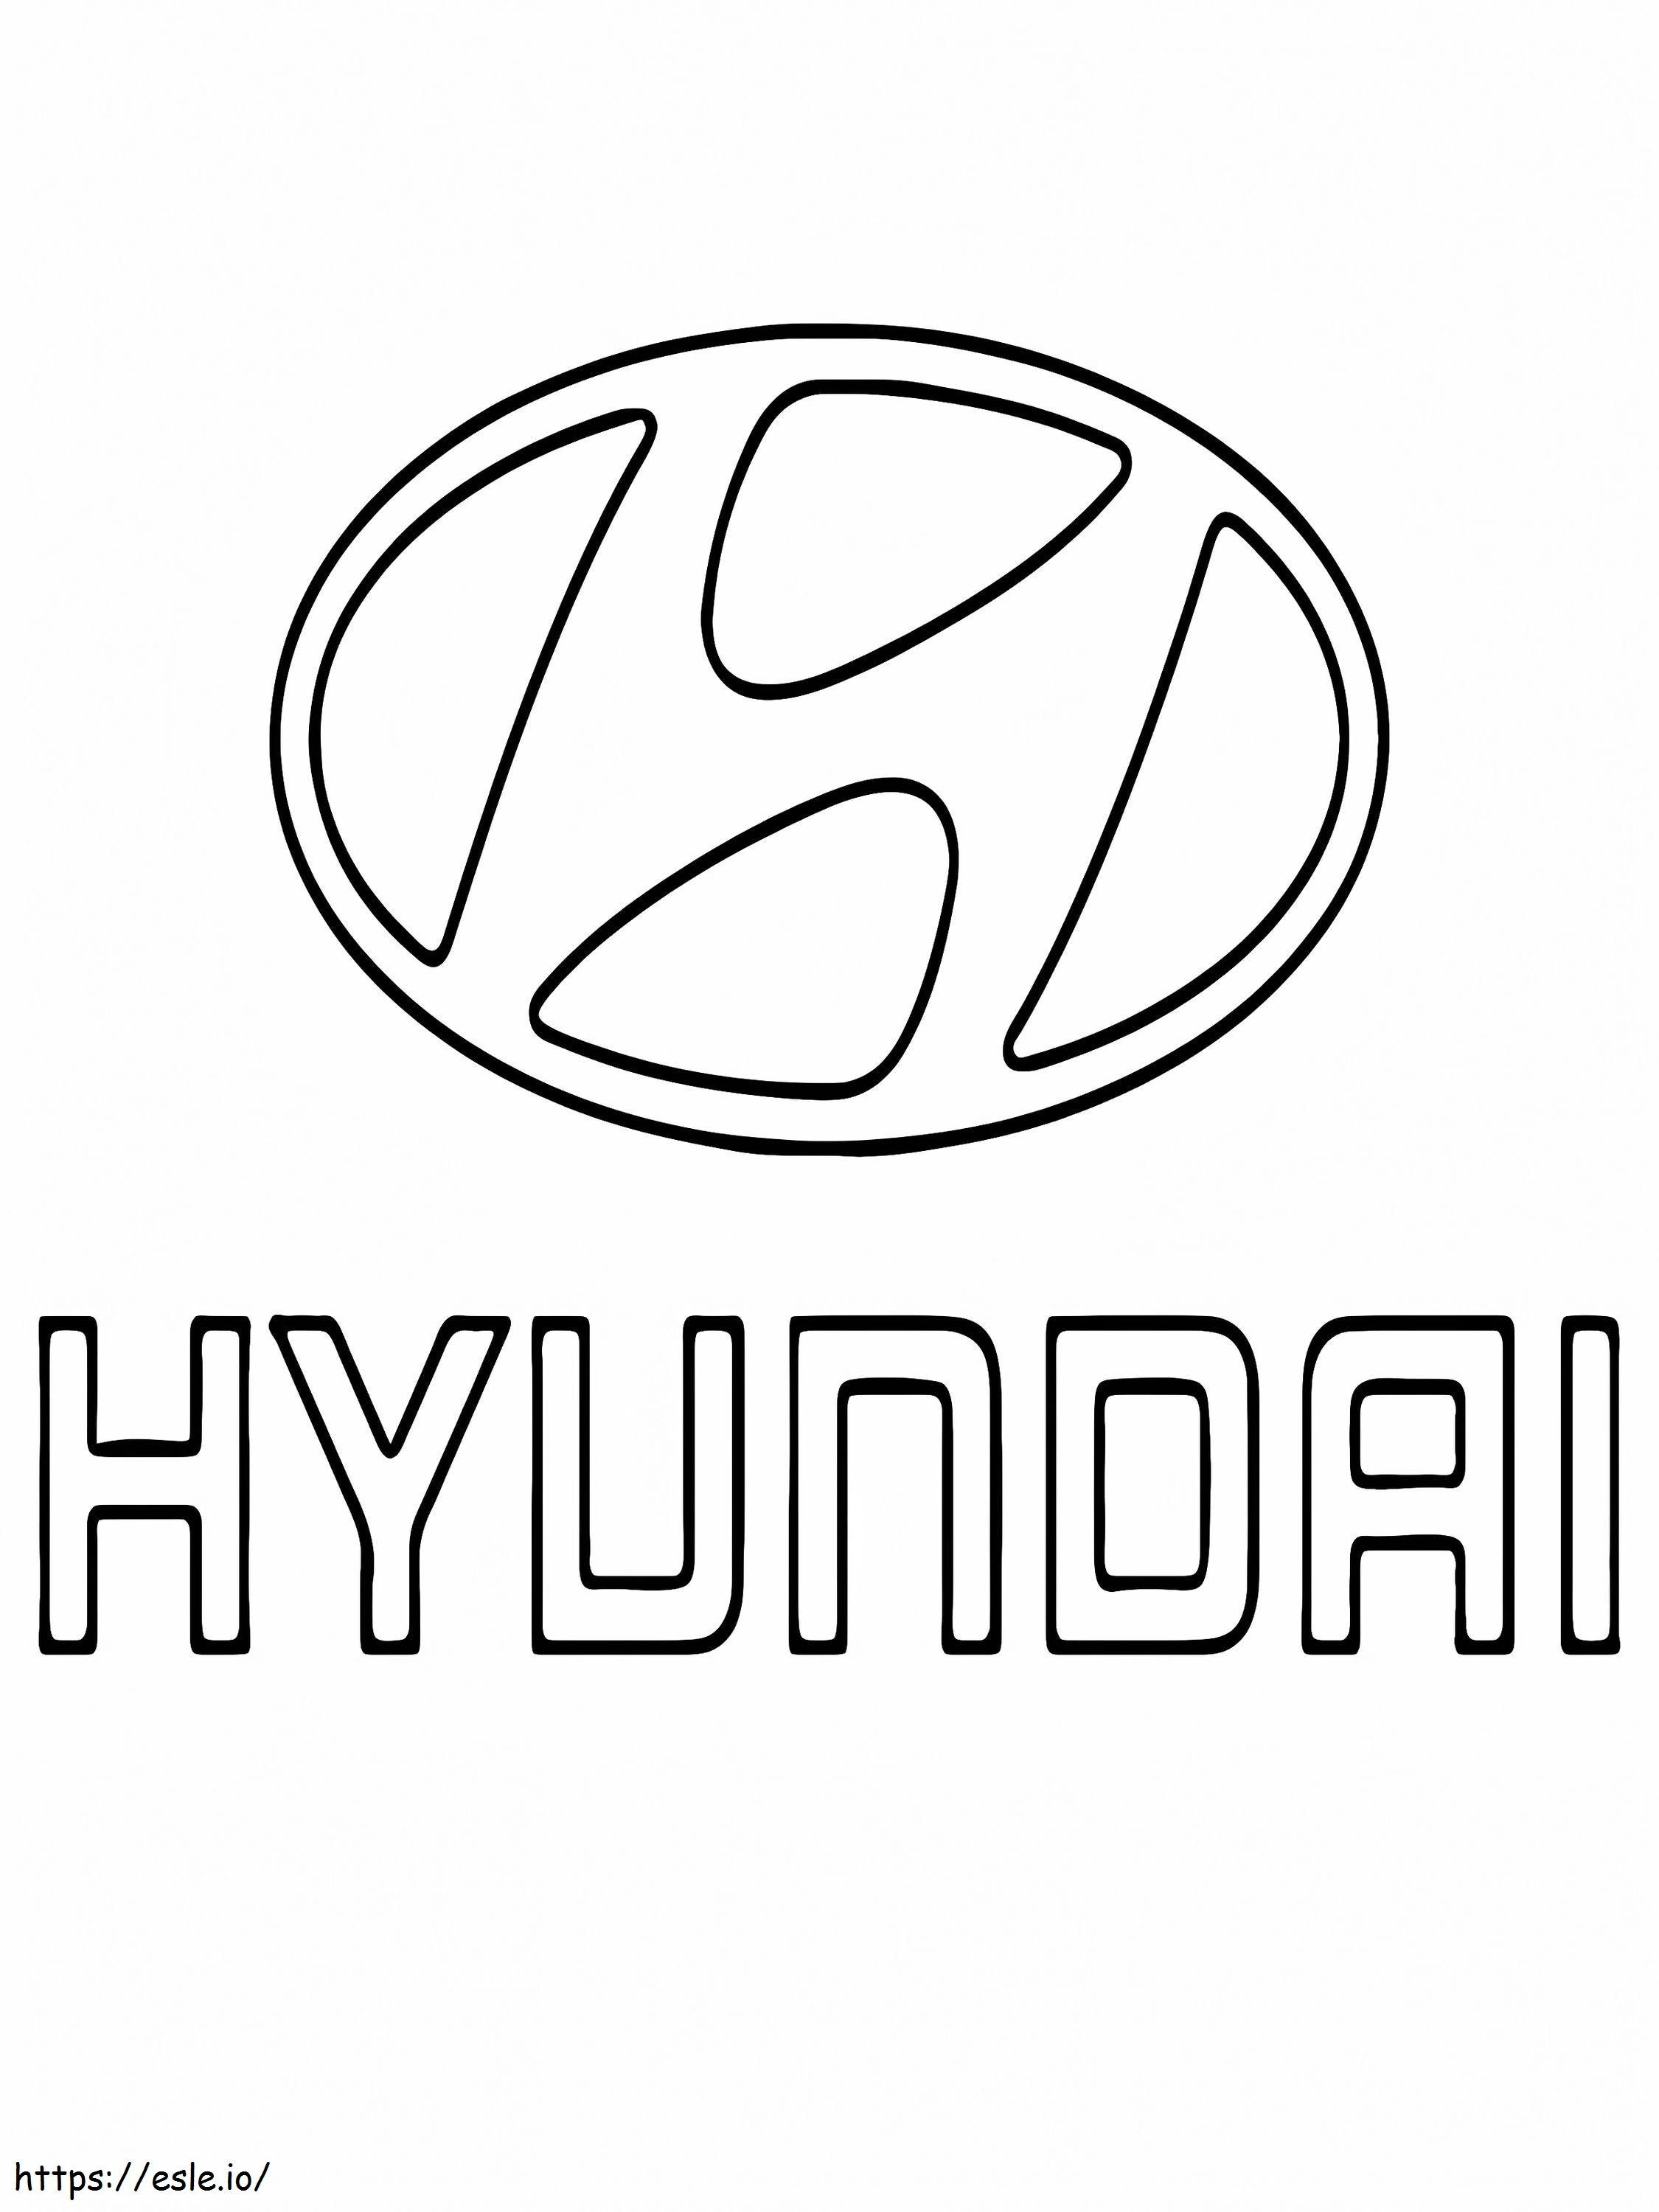 Logo-ul mașinii Hyundai de colorat